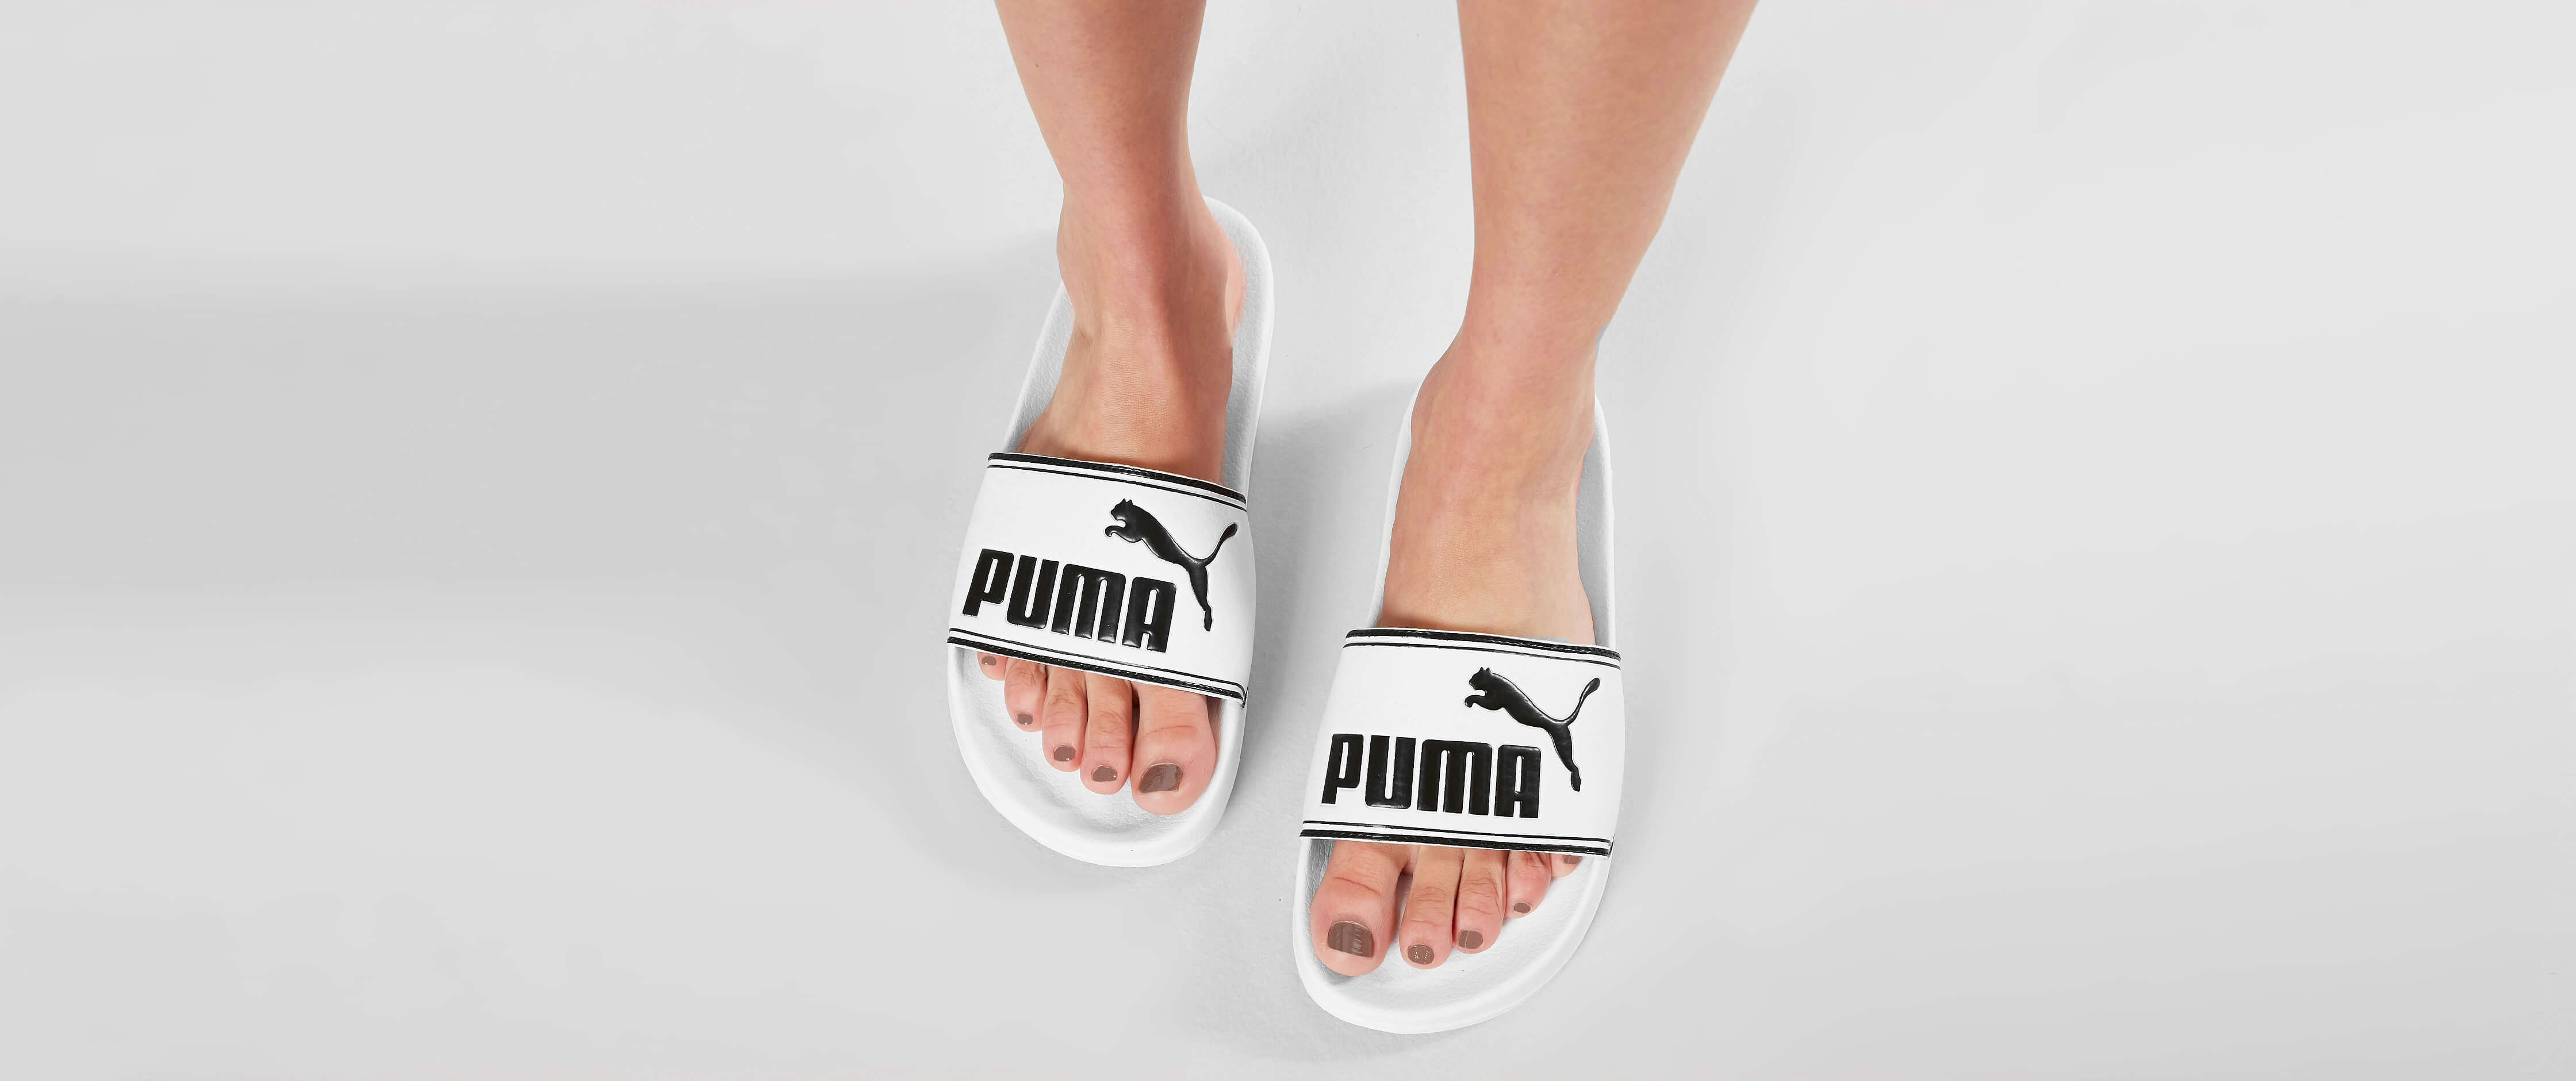 puma black and white slides